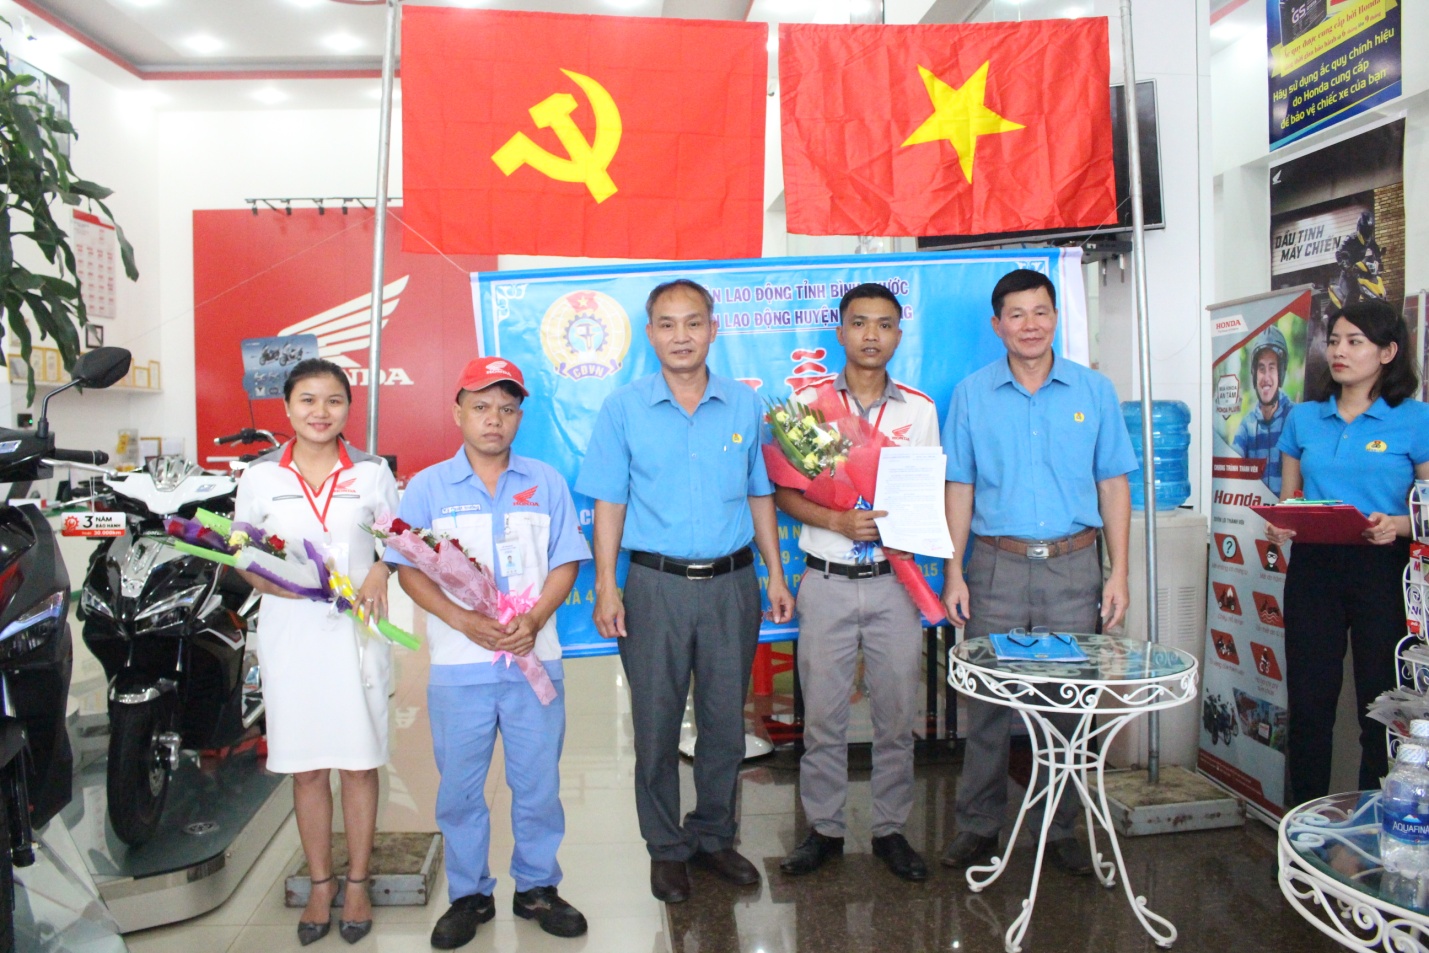 Liên đoàn Lao động huyện Phú Riềng: Thành lập Công đoàn cơ sở Công ty TNHH Ô tô, Xe máy Trung Thạch, chi nhánh Bù Nho